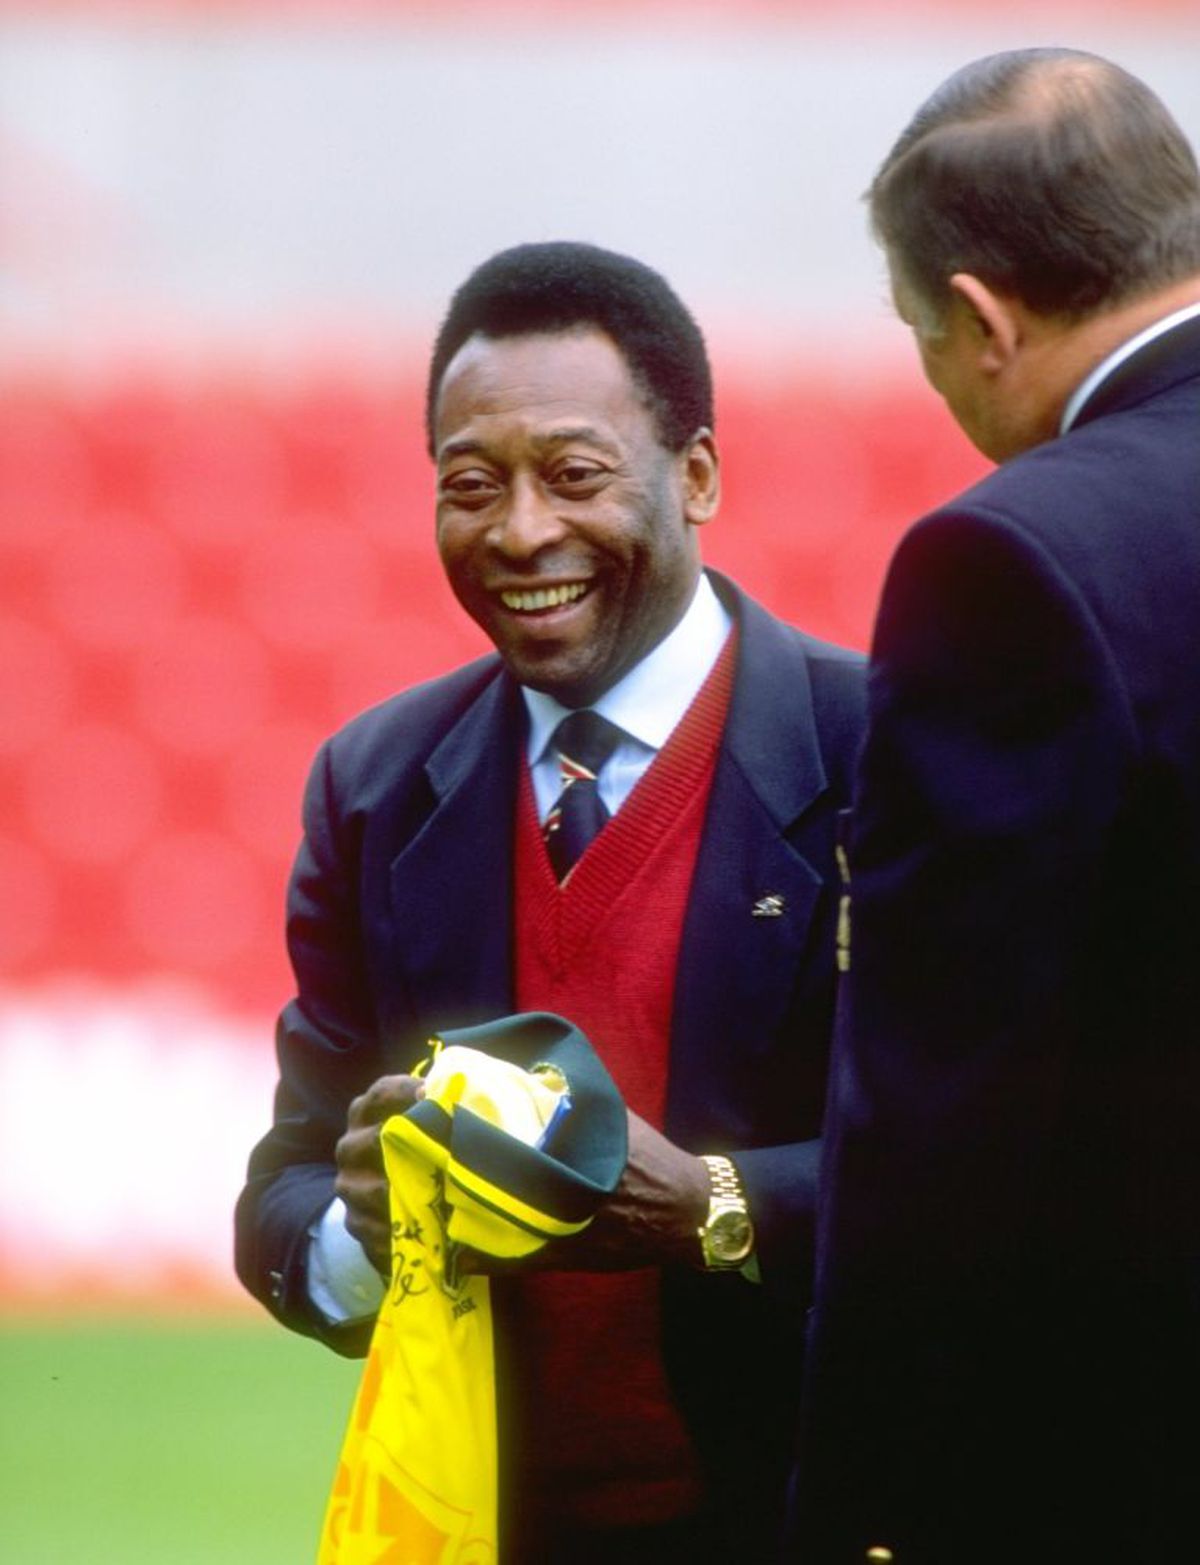 Familia lui Pelé a cerut retragerea tricoului cu numărul 10 de la Santos, dar clubul a refuzat » Argumentul suprem invocat